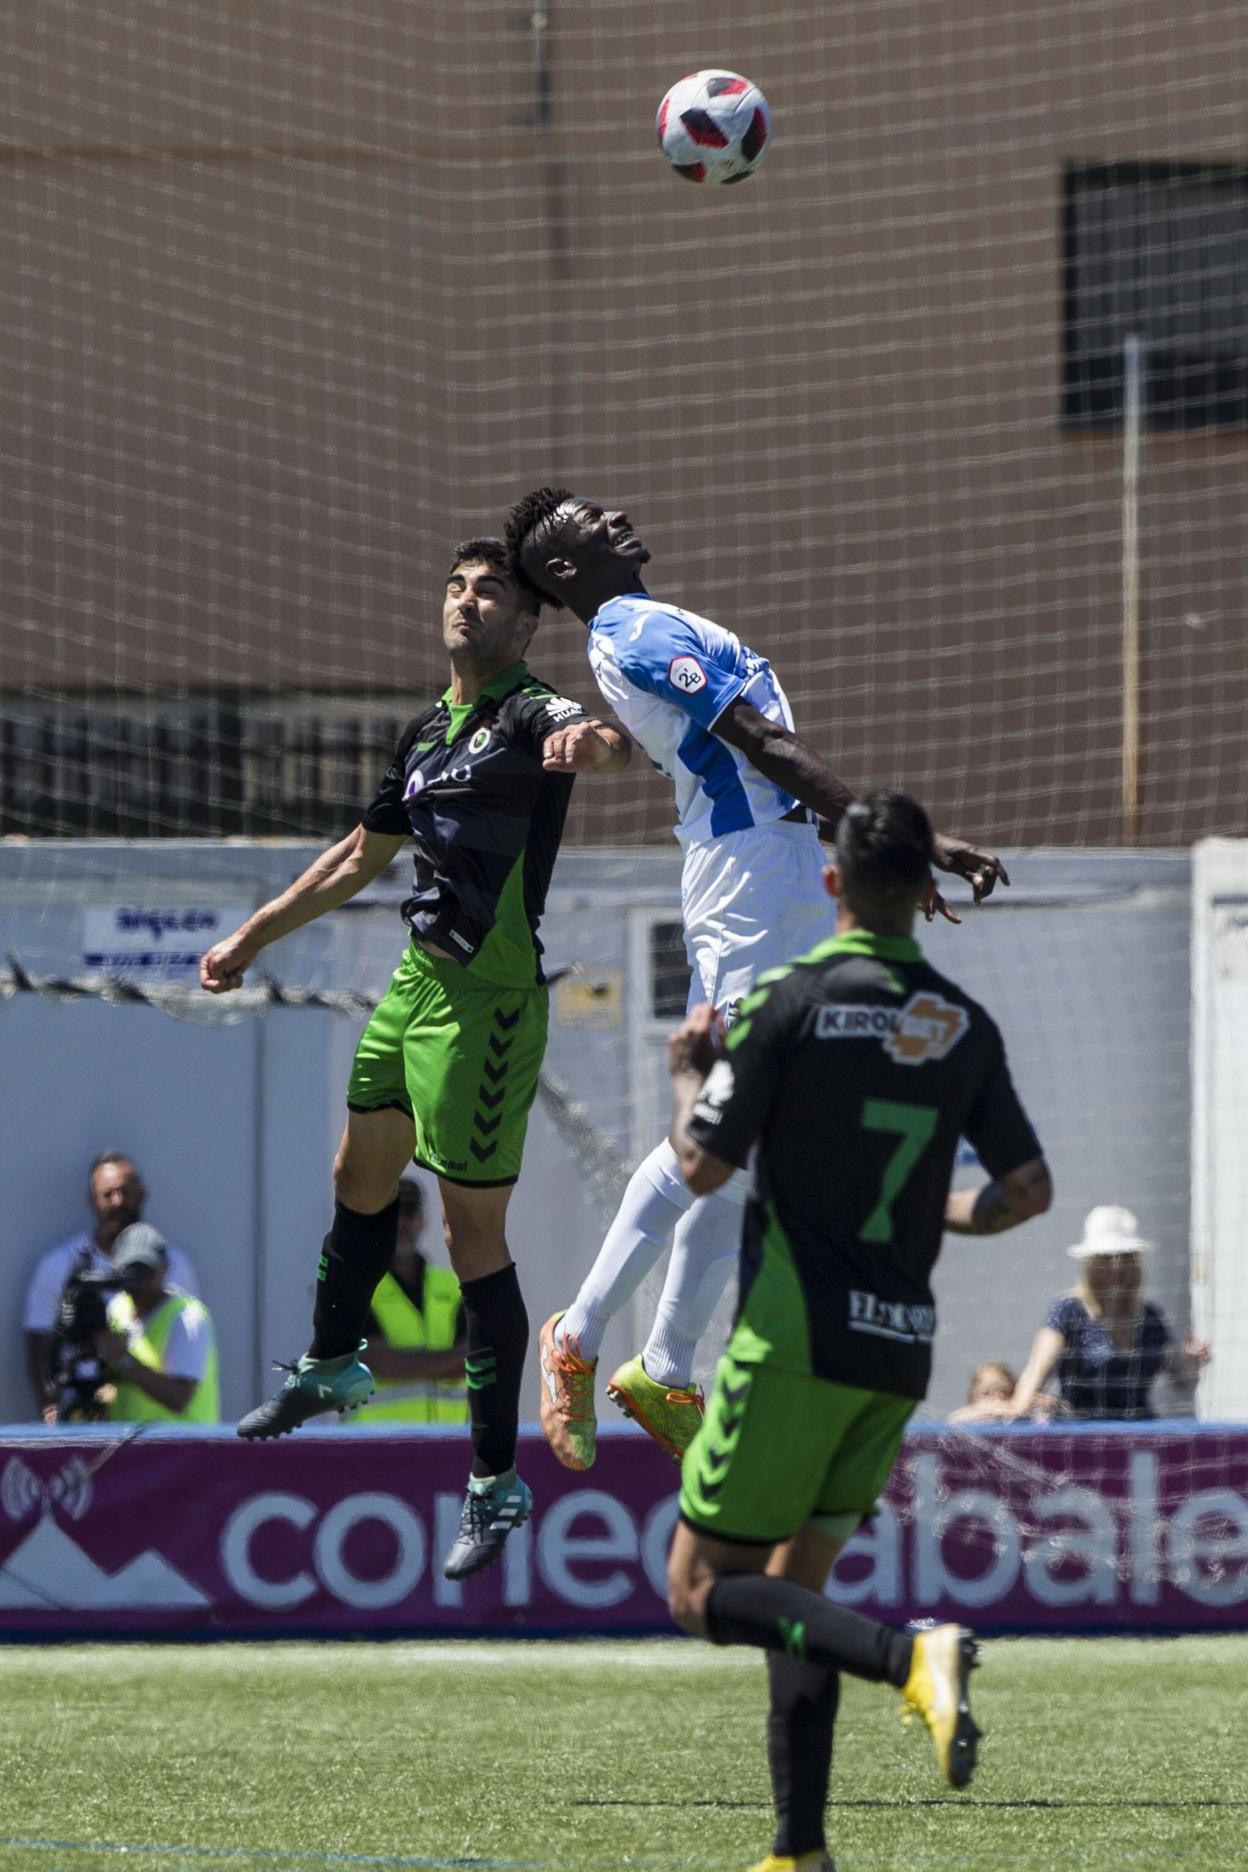 Nuha salta con Olaortua durante el partido jugado en Son Malferit el pasado 2 de junio entre el Atlético Baleares y el Racing.